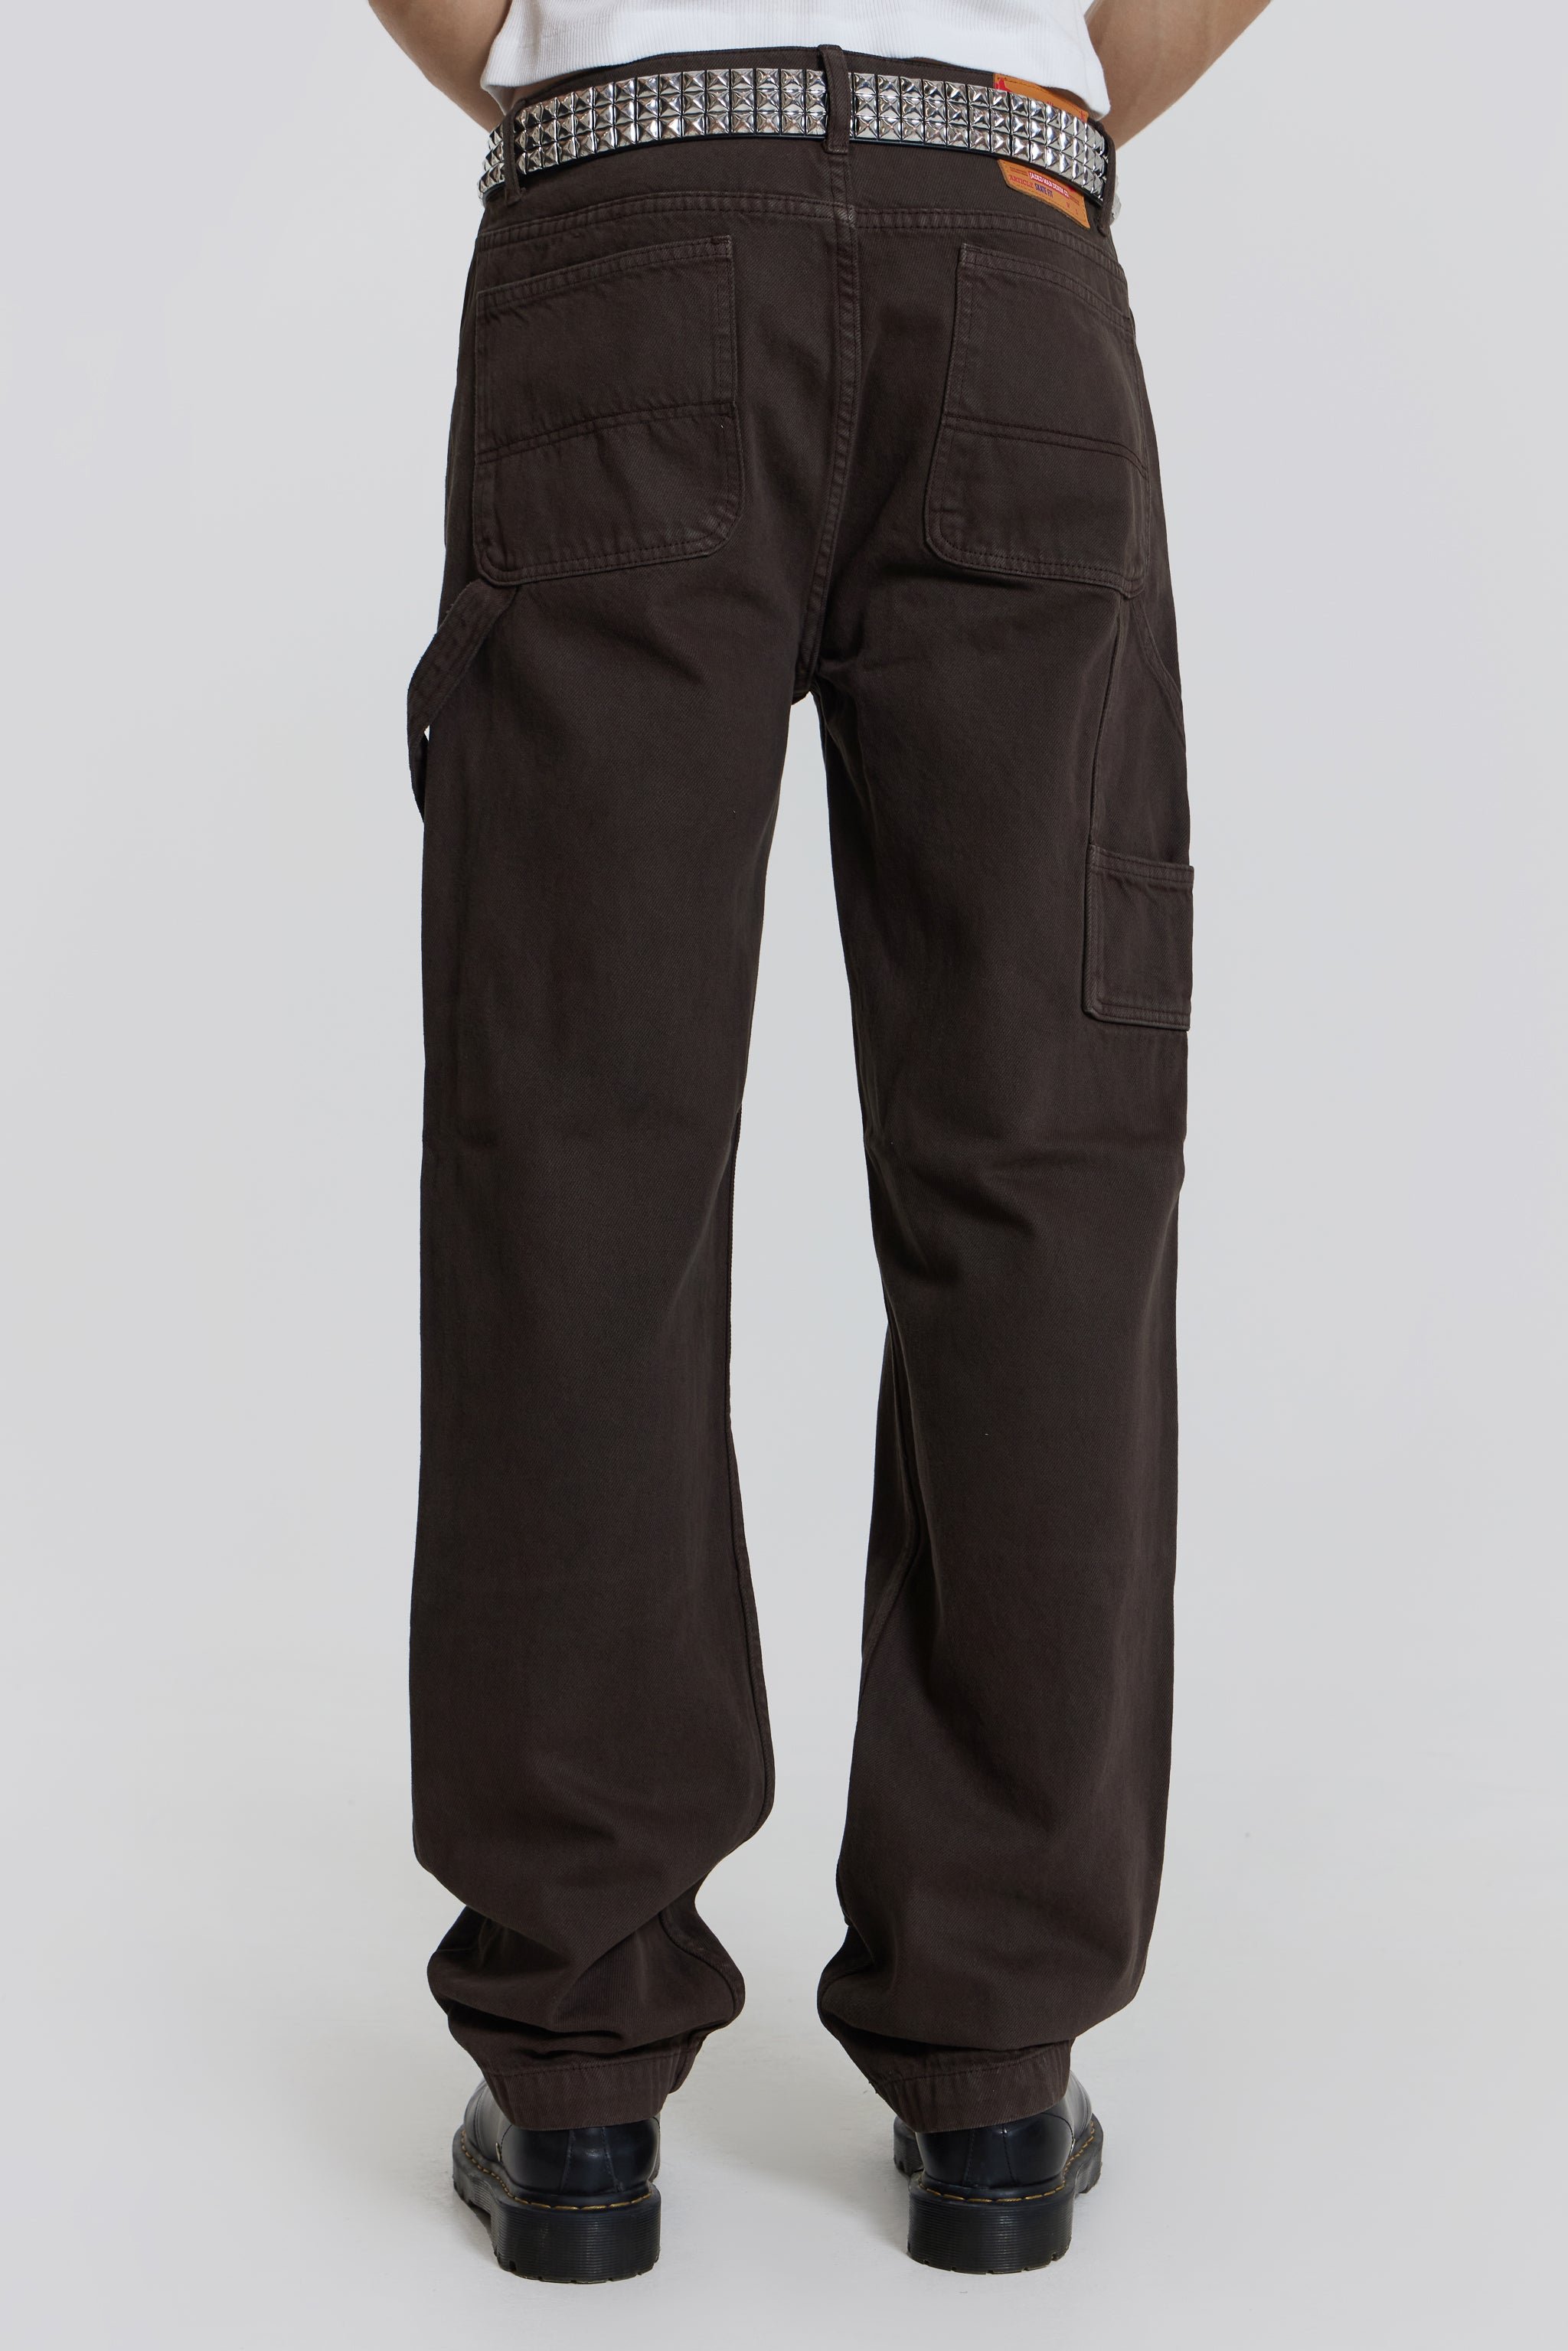 Washed Black Carpenter Jeans | Jaded London - W30 L32 / Black